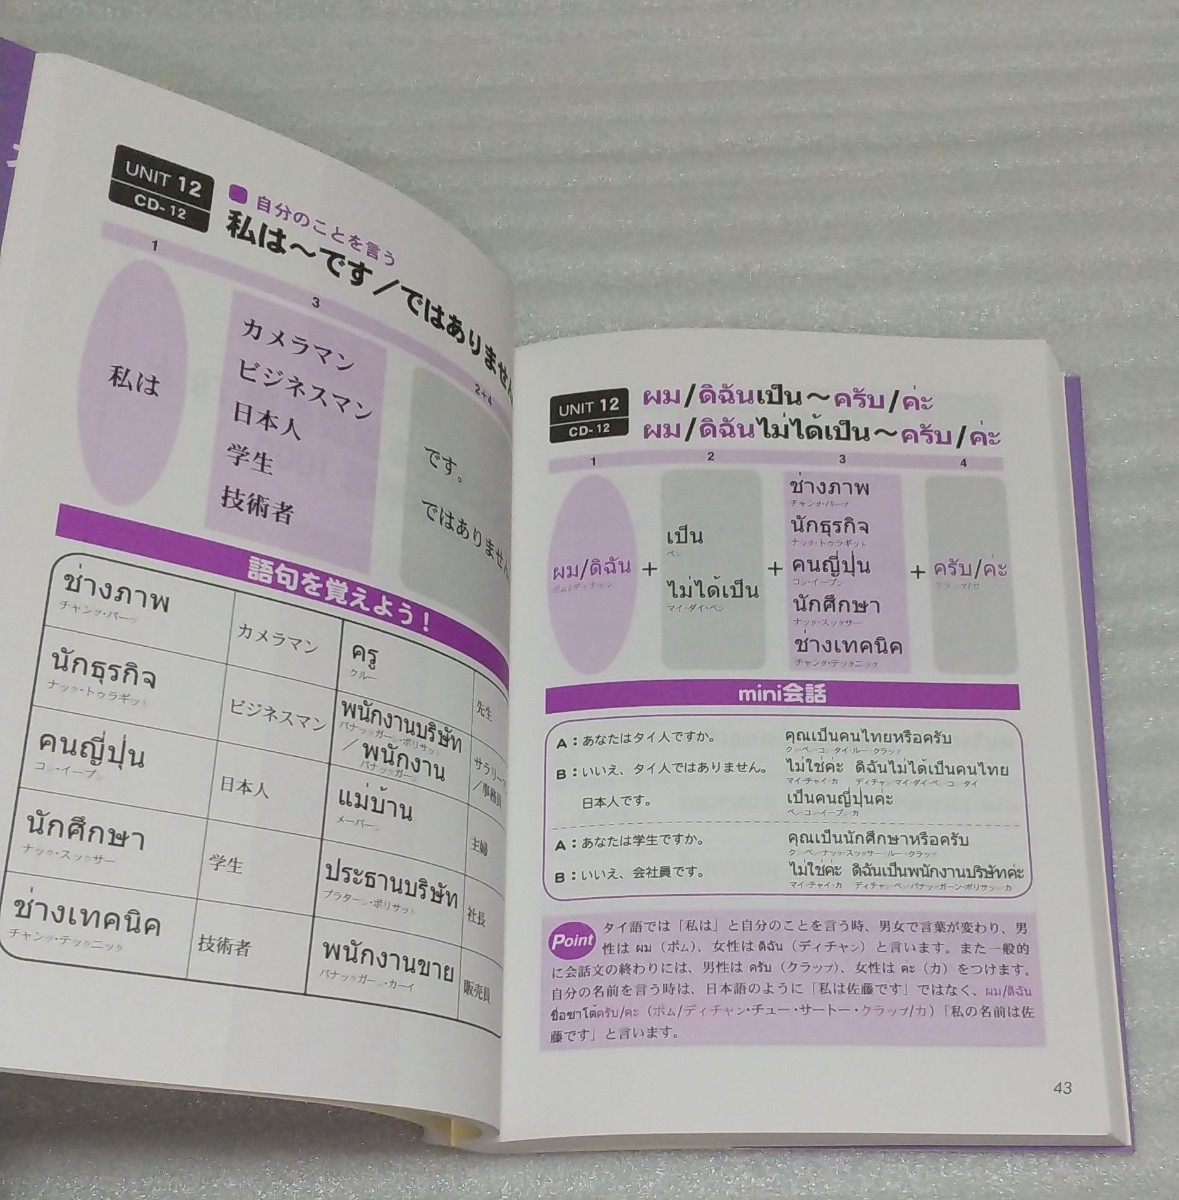 ☆74分CD未開封 スーパー ビジュアル すぐに使えるタイ語 会話 練習学習必須重要表現 単語集2800 日本語と対比 外国語学習法 9784896894417_※使用感も無い方かと思います。